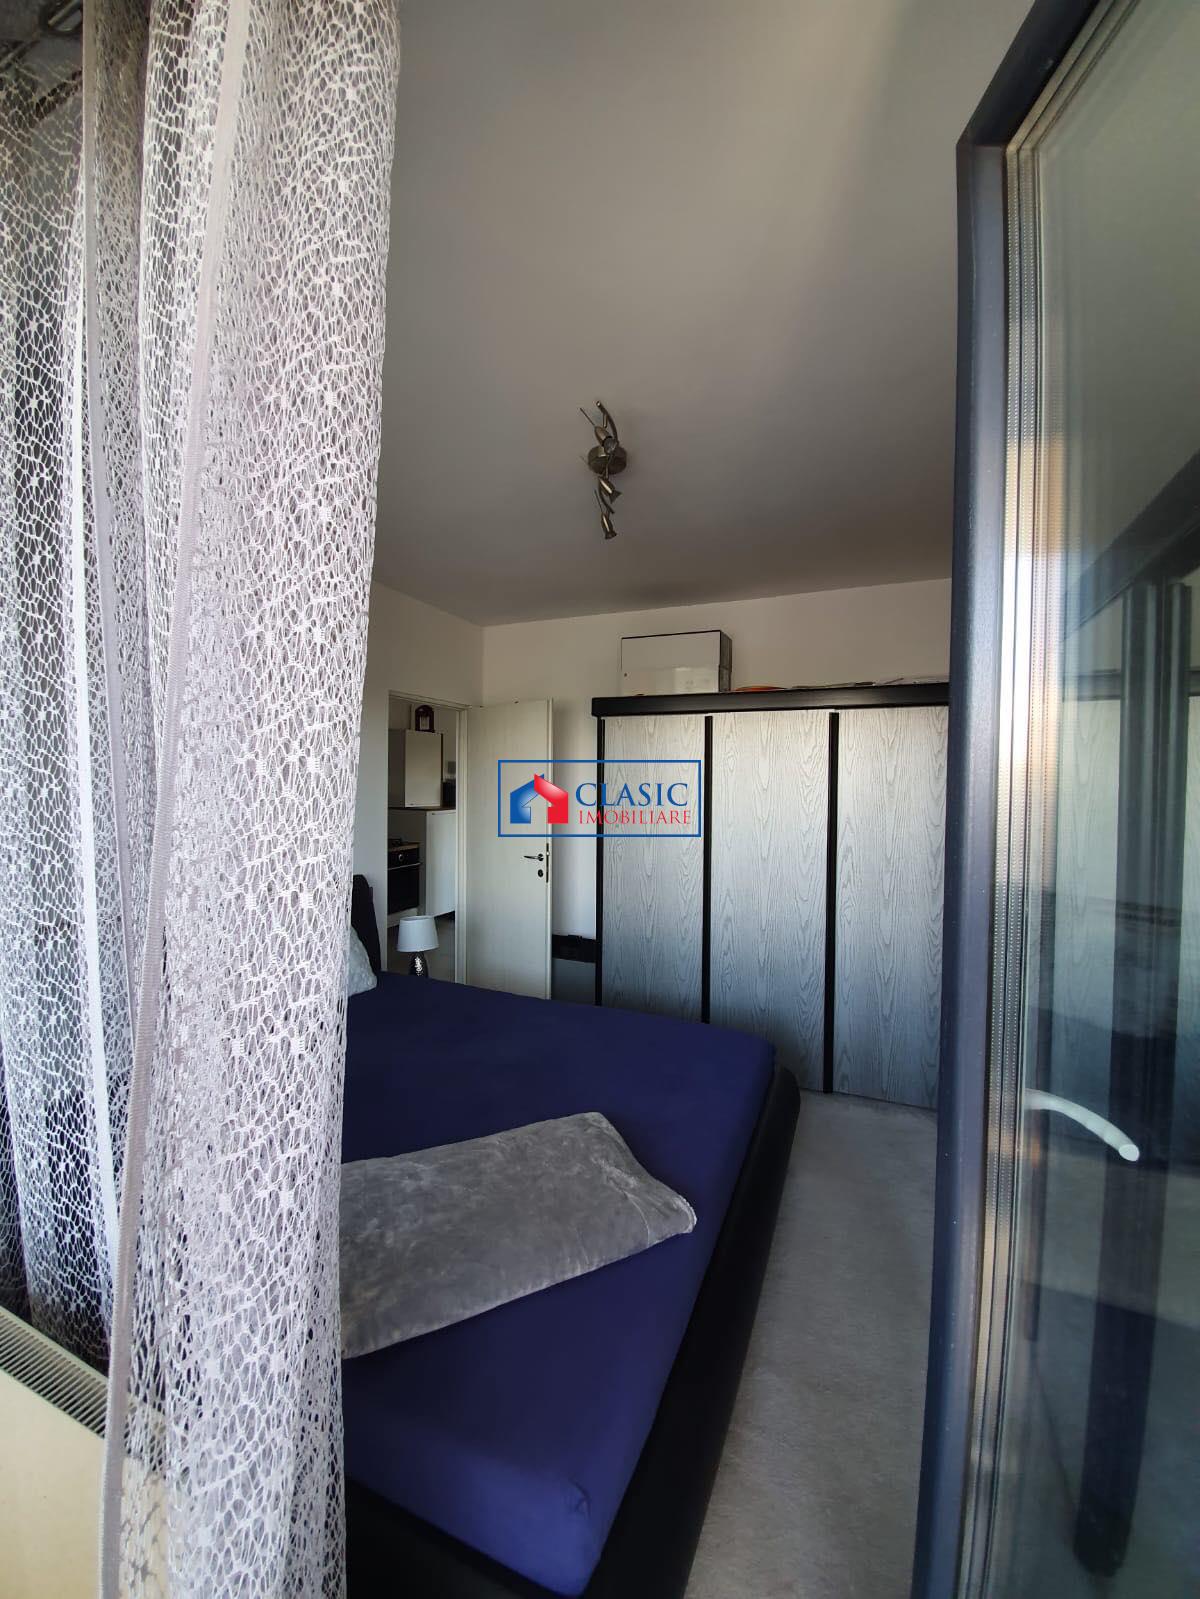 Vanzare apartament 2 camere de LUX in Dambul Rotund  Fabrica de Sport